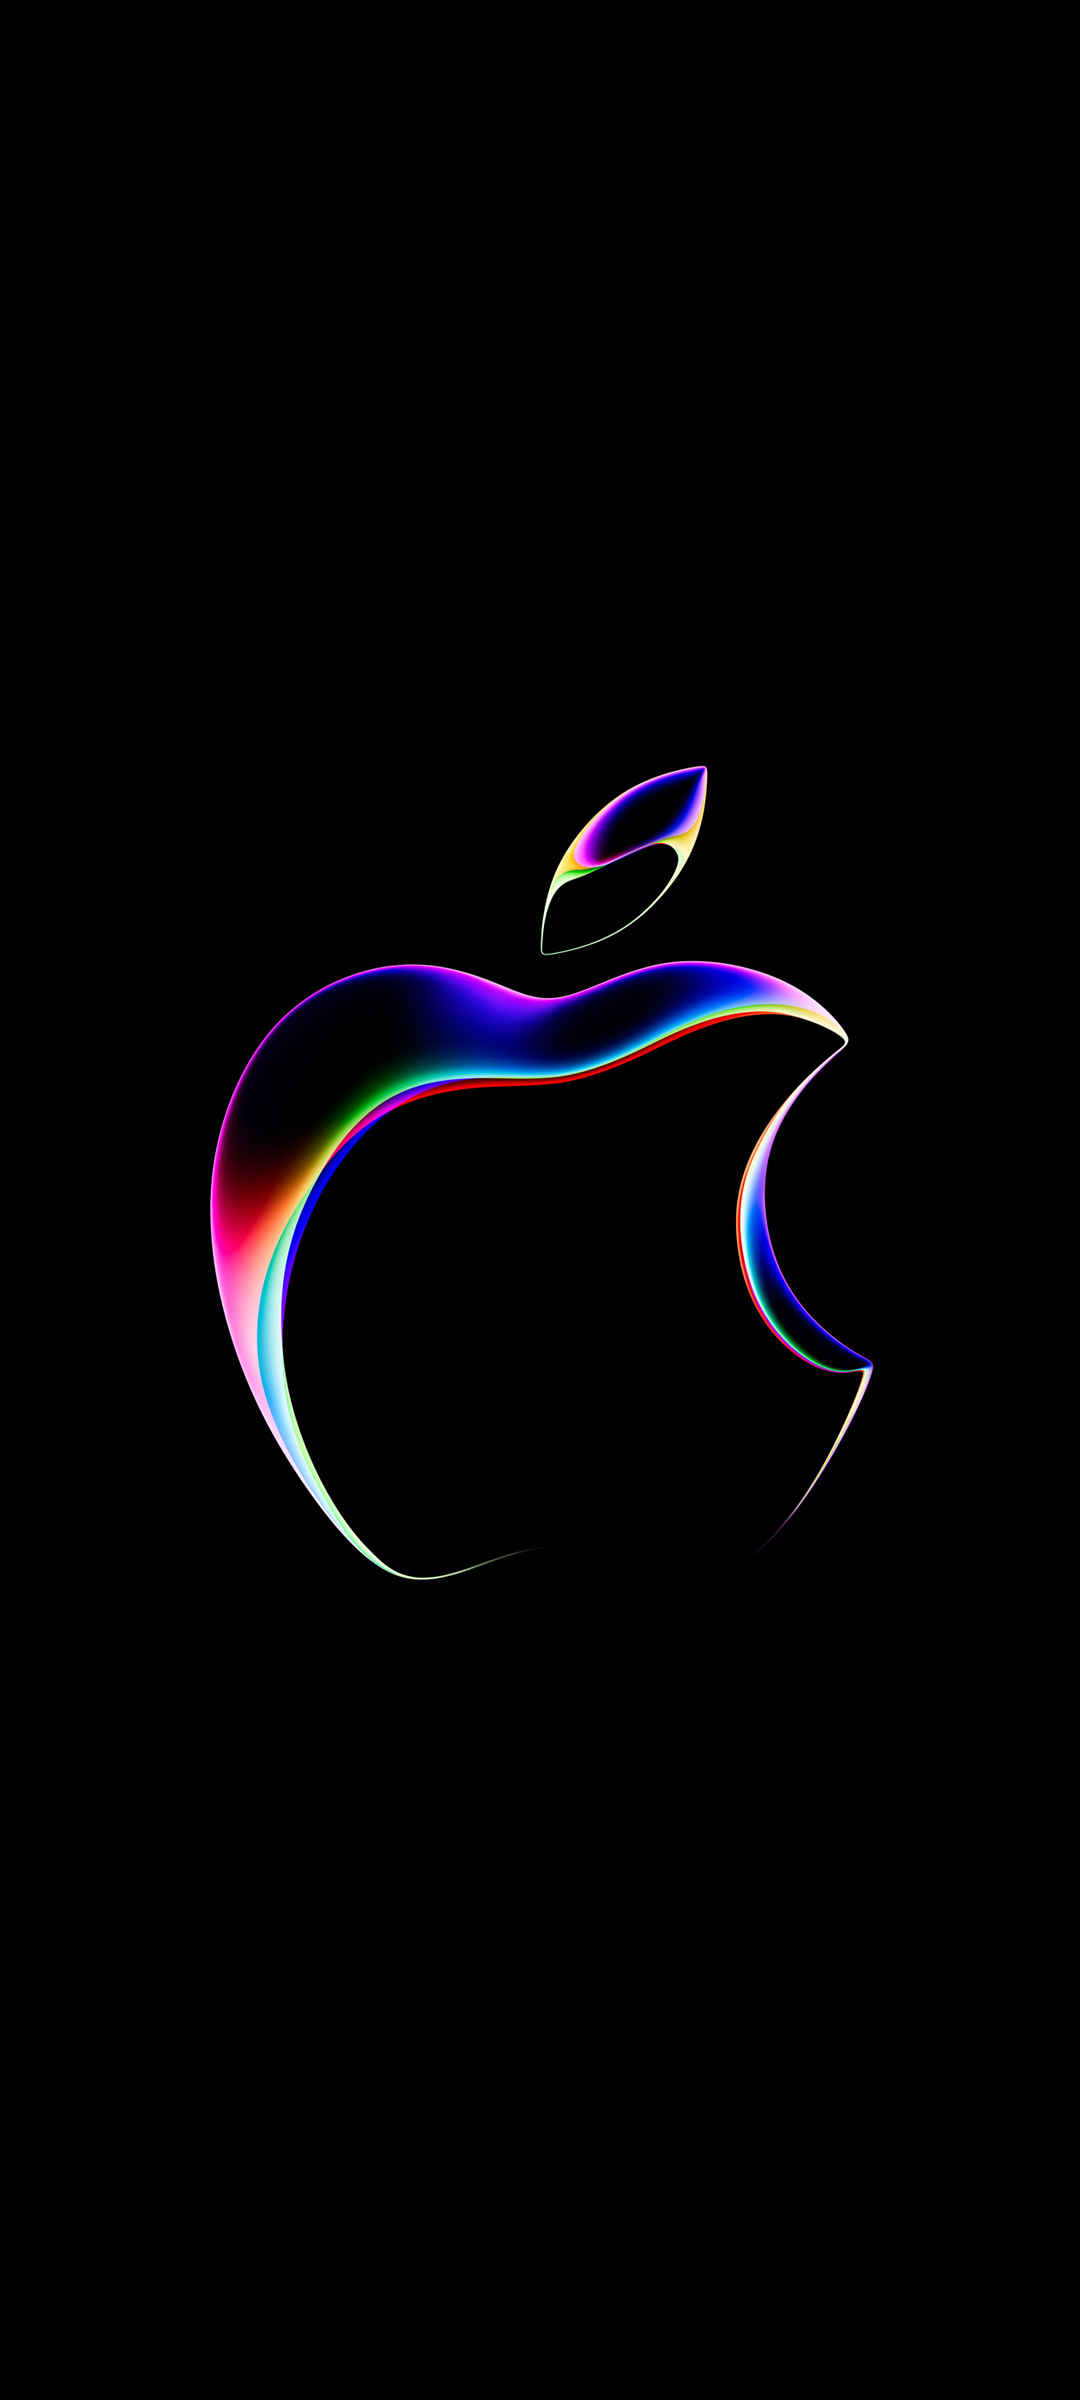 创意苹果logo 黑色背景-